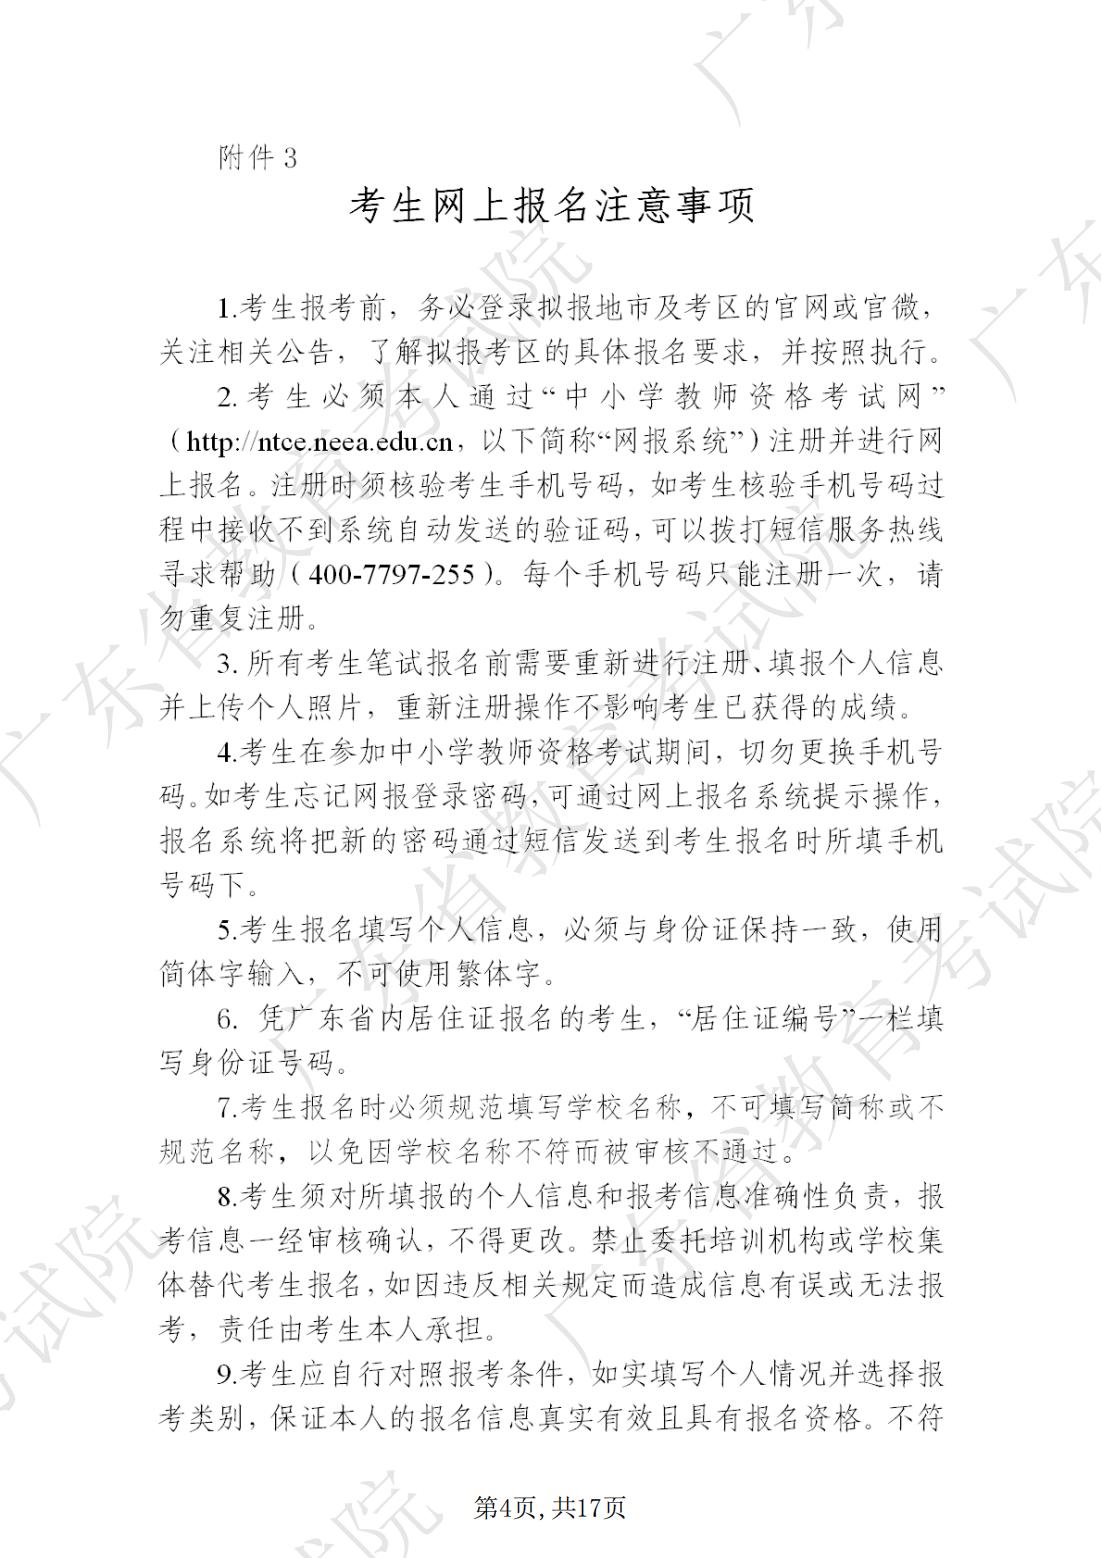 2022-08-18  关于发布《广东省2022年下半年中小学教师资格考试笔试通告》的请示_03.jpg